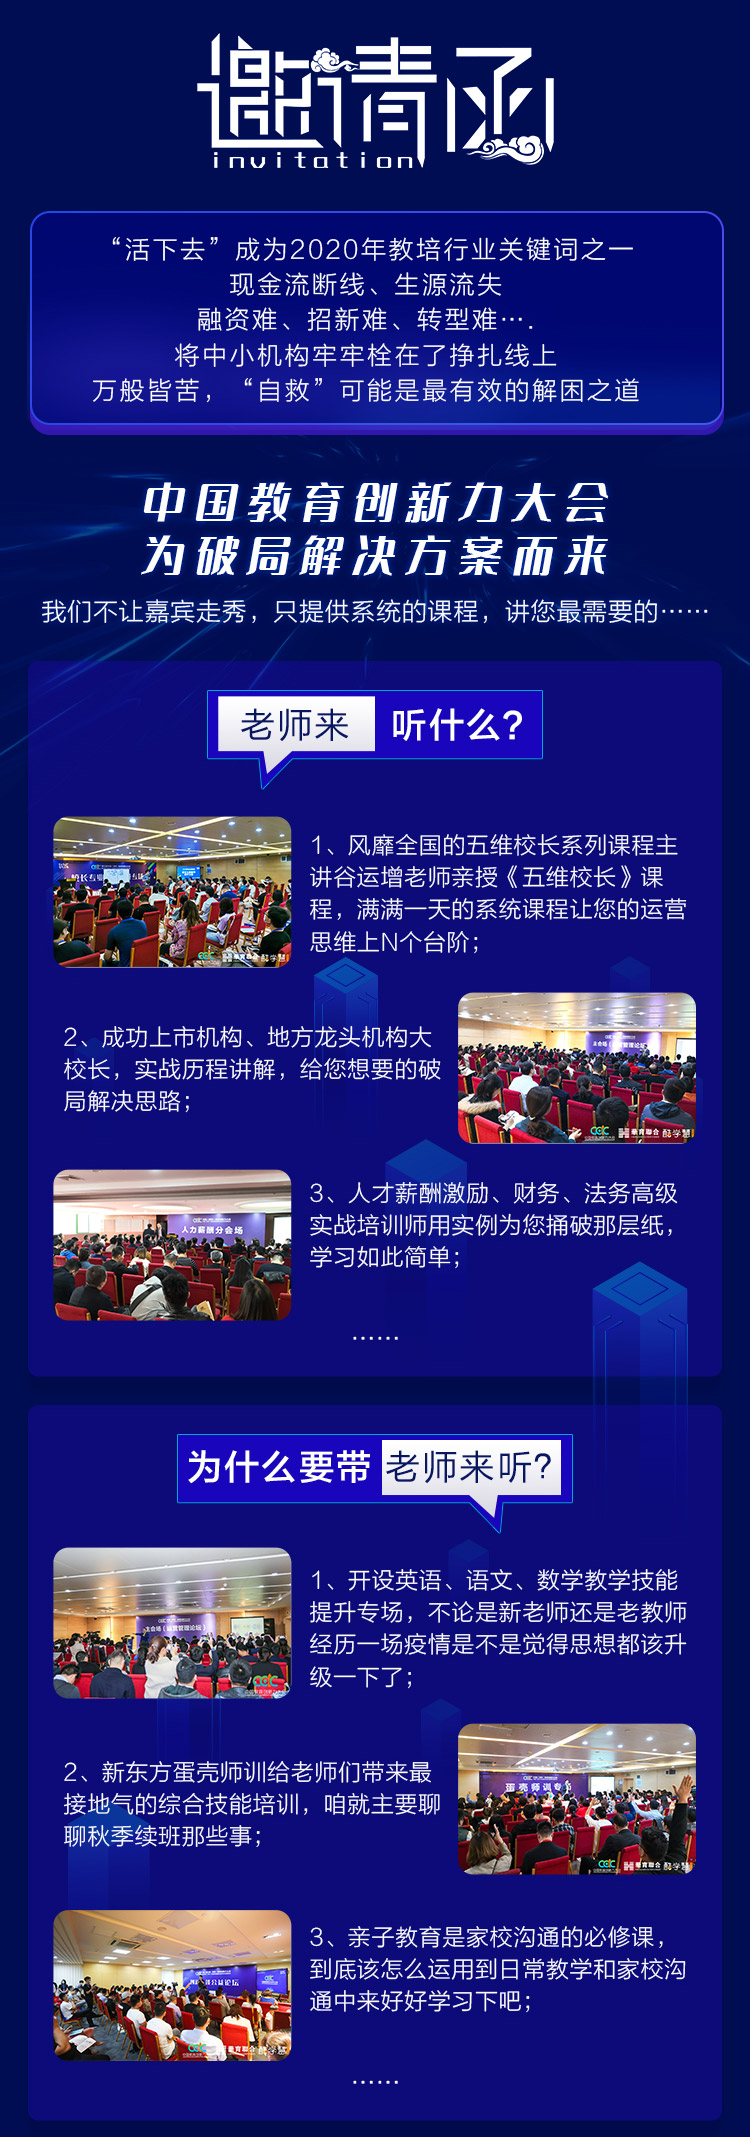 2020济南中国教育创新力大会